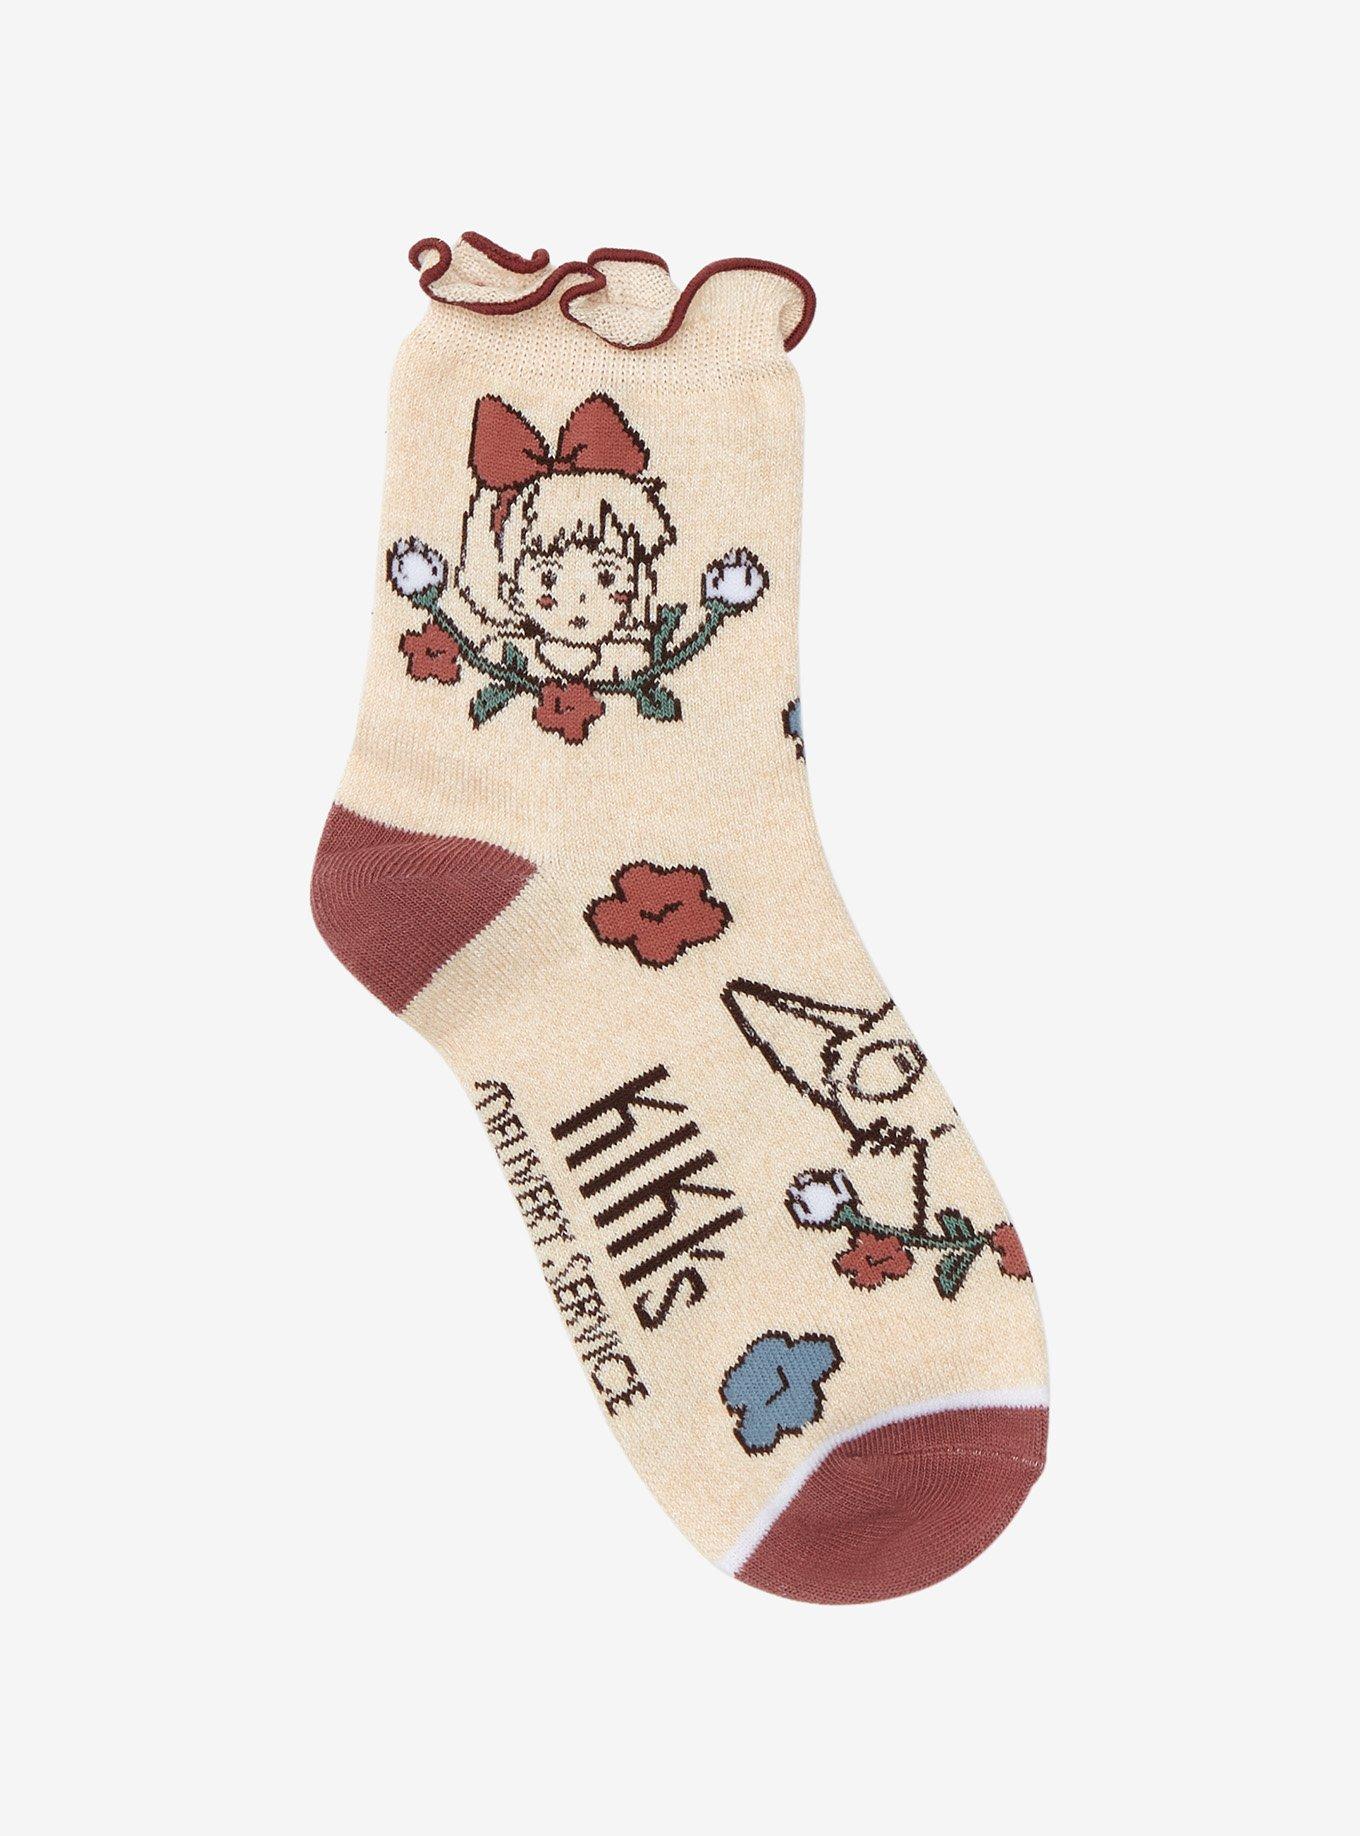 Studio Ghibli Kiki's Delivery Service Floral Ankle Socks, , alternate